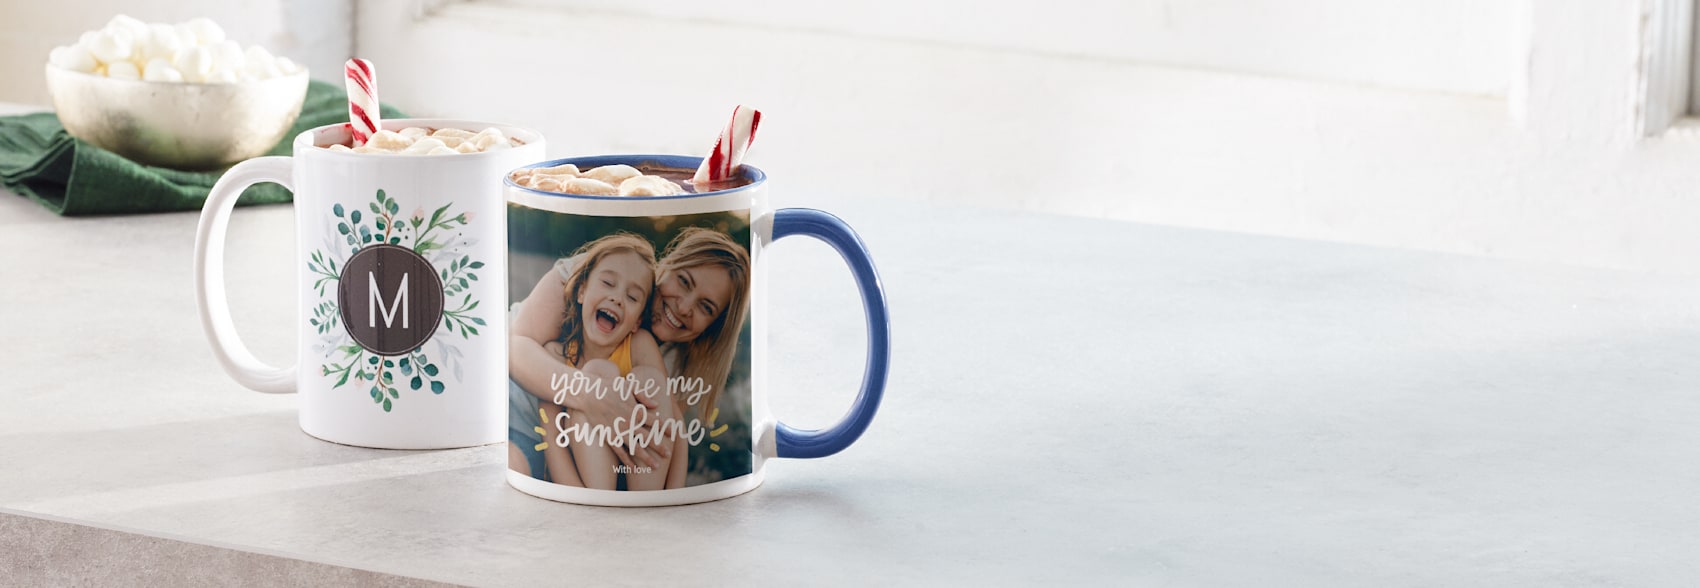 Custom Name Special Mug for Wedding or Anniversary 15oz White Ceramic Mug Personalized Heart Initial Mug